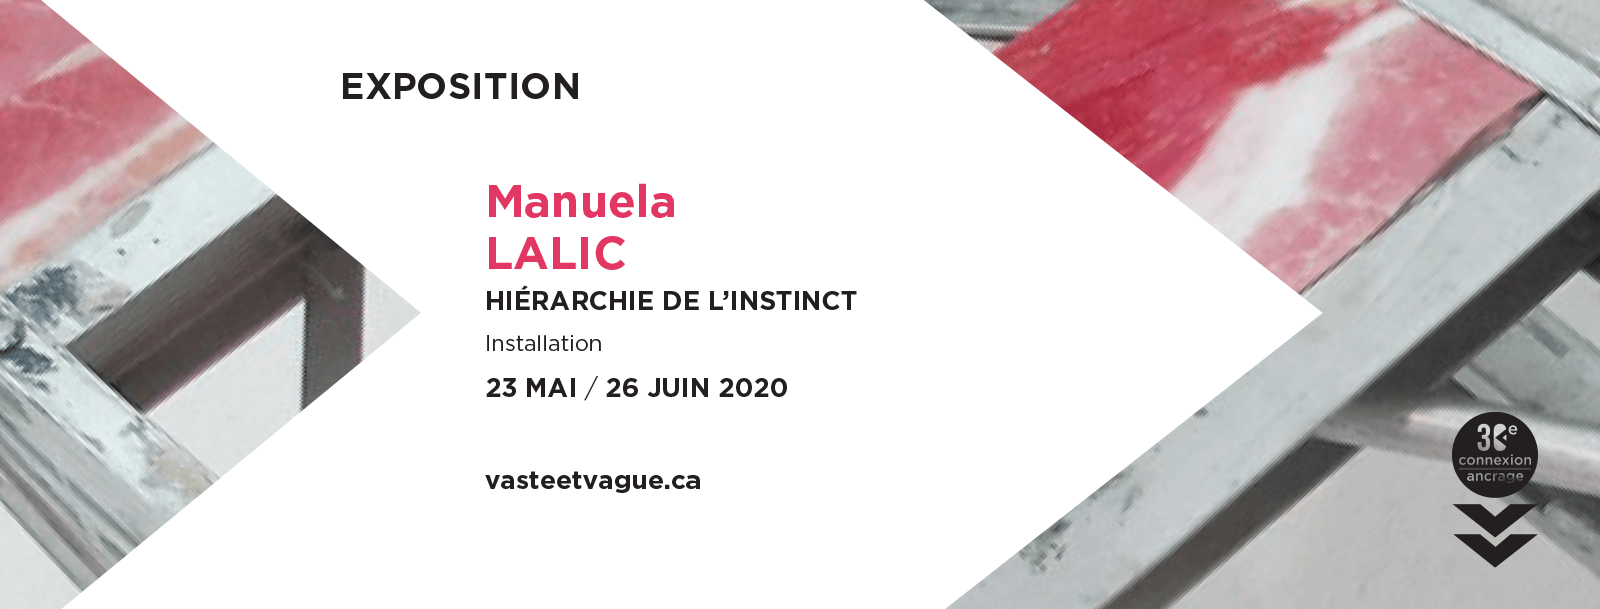 HIÉARCHIE DE L’INSTINCT | Installation | Manuela LALIC